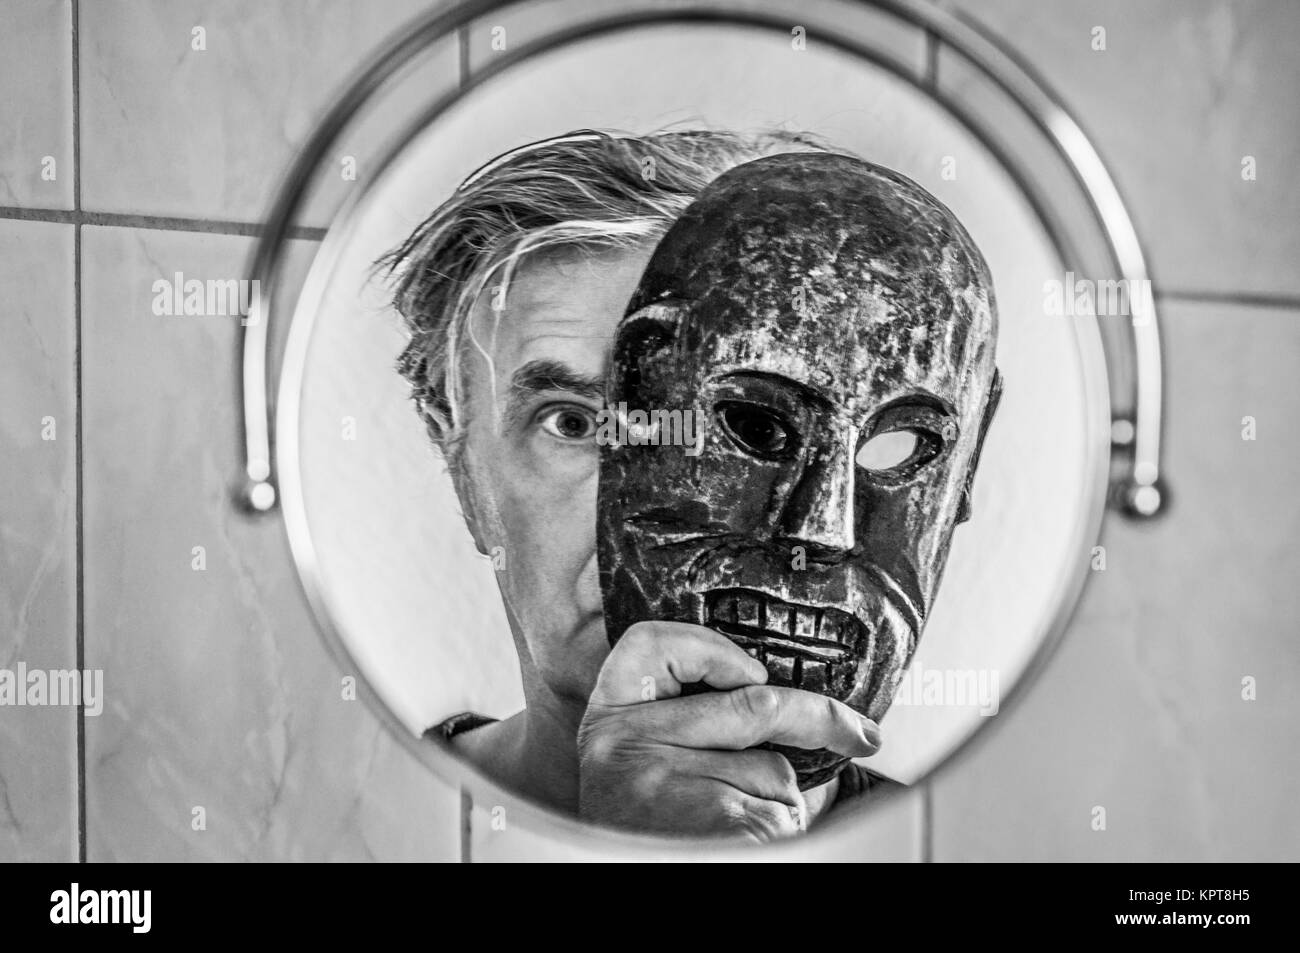 Mann mit Maske betrachtet sich im Spiegel. Stock Photo